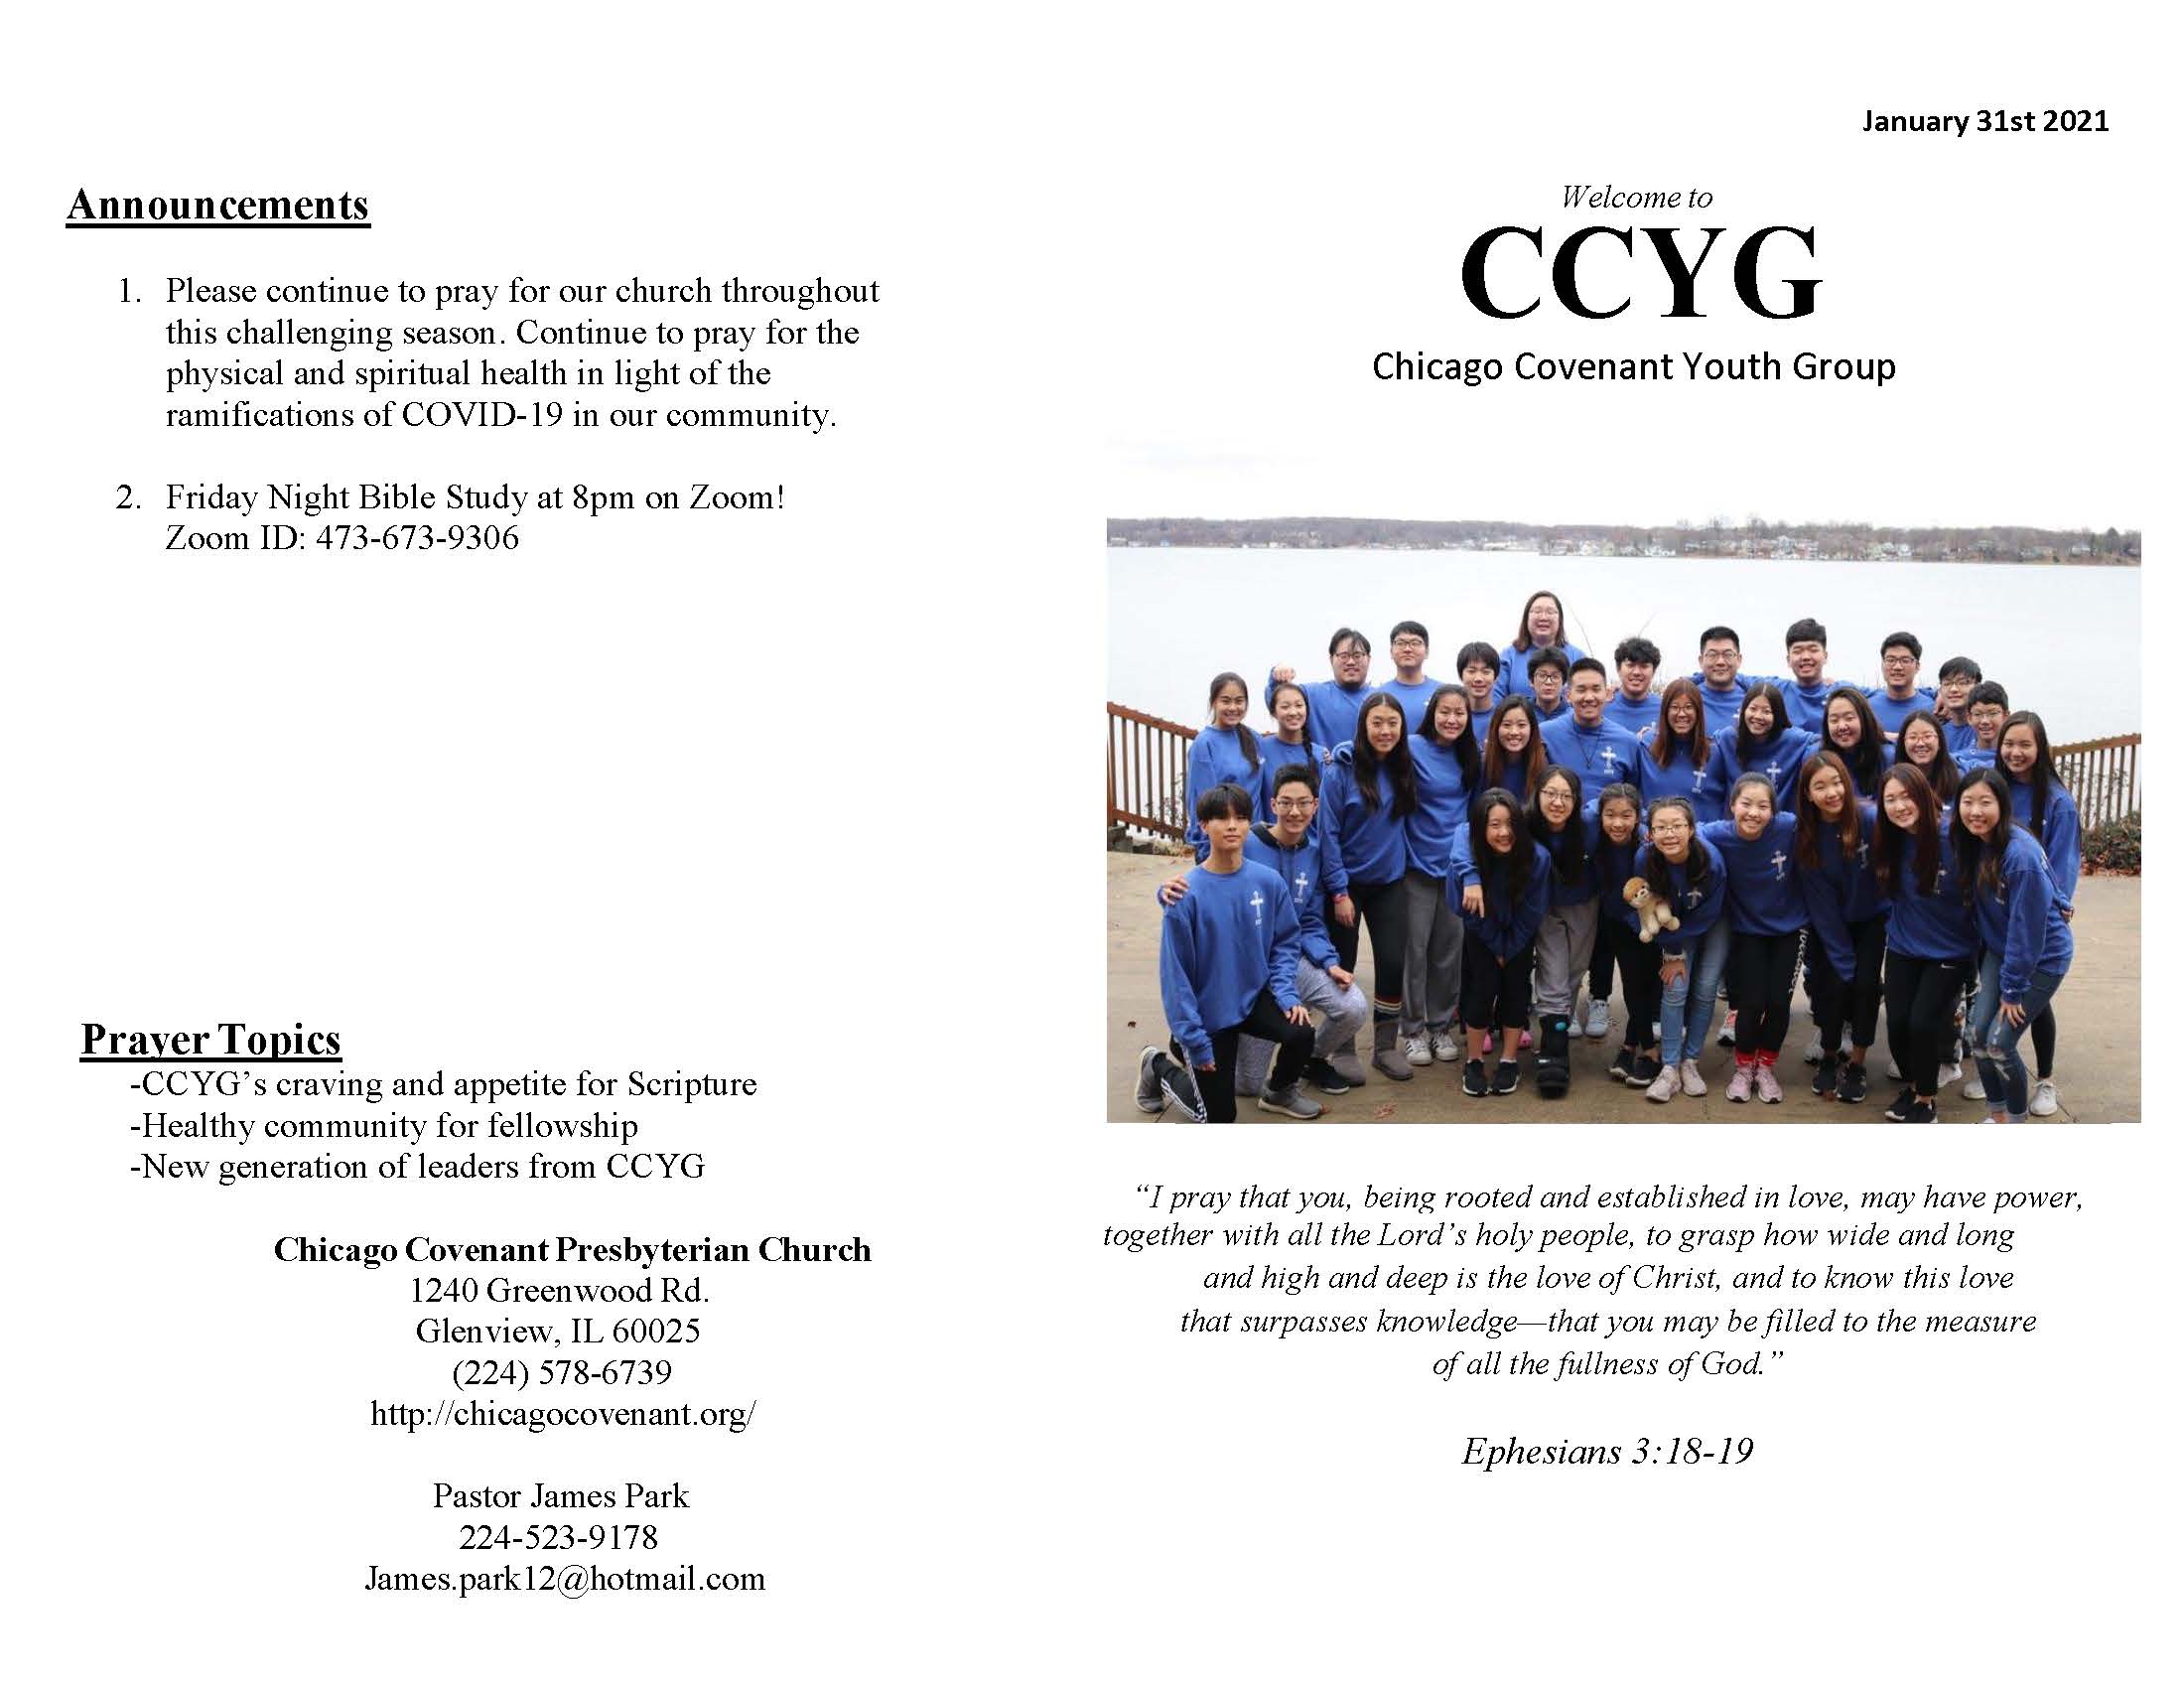 CCYG Bulletin 210131_Page_1.jpg